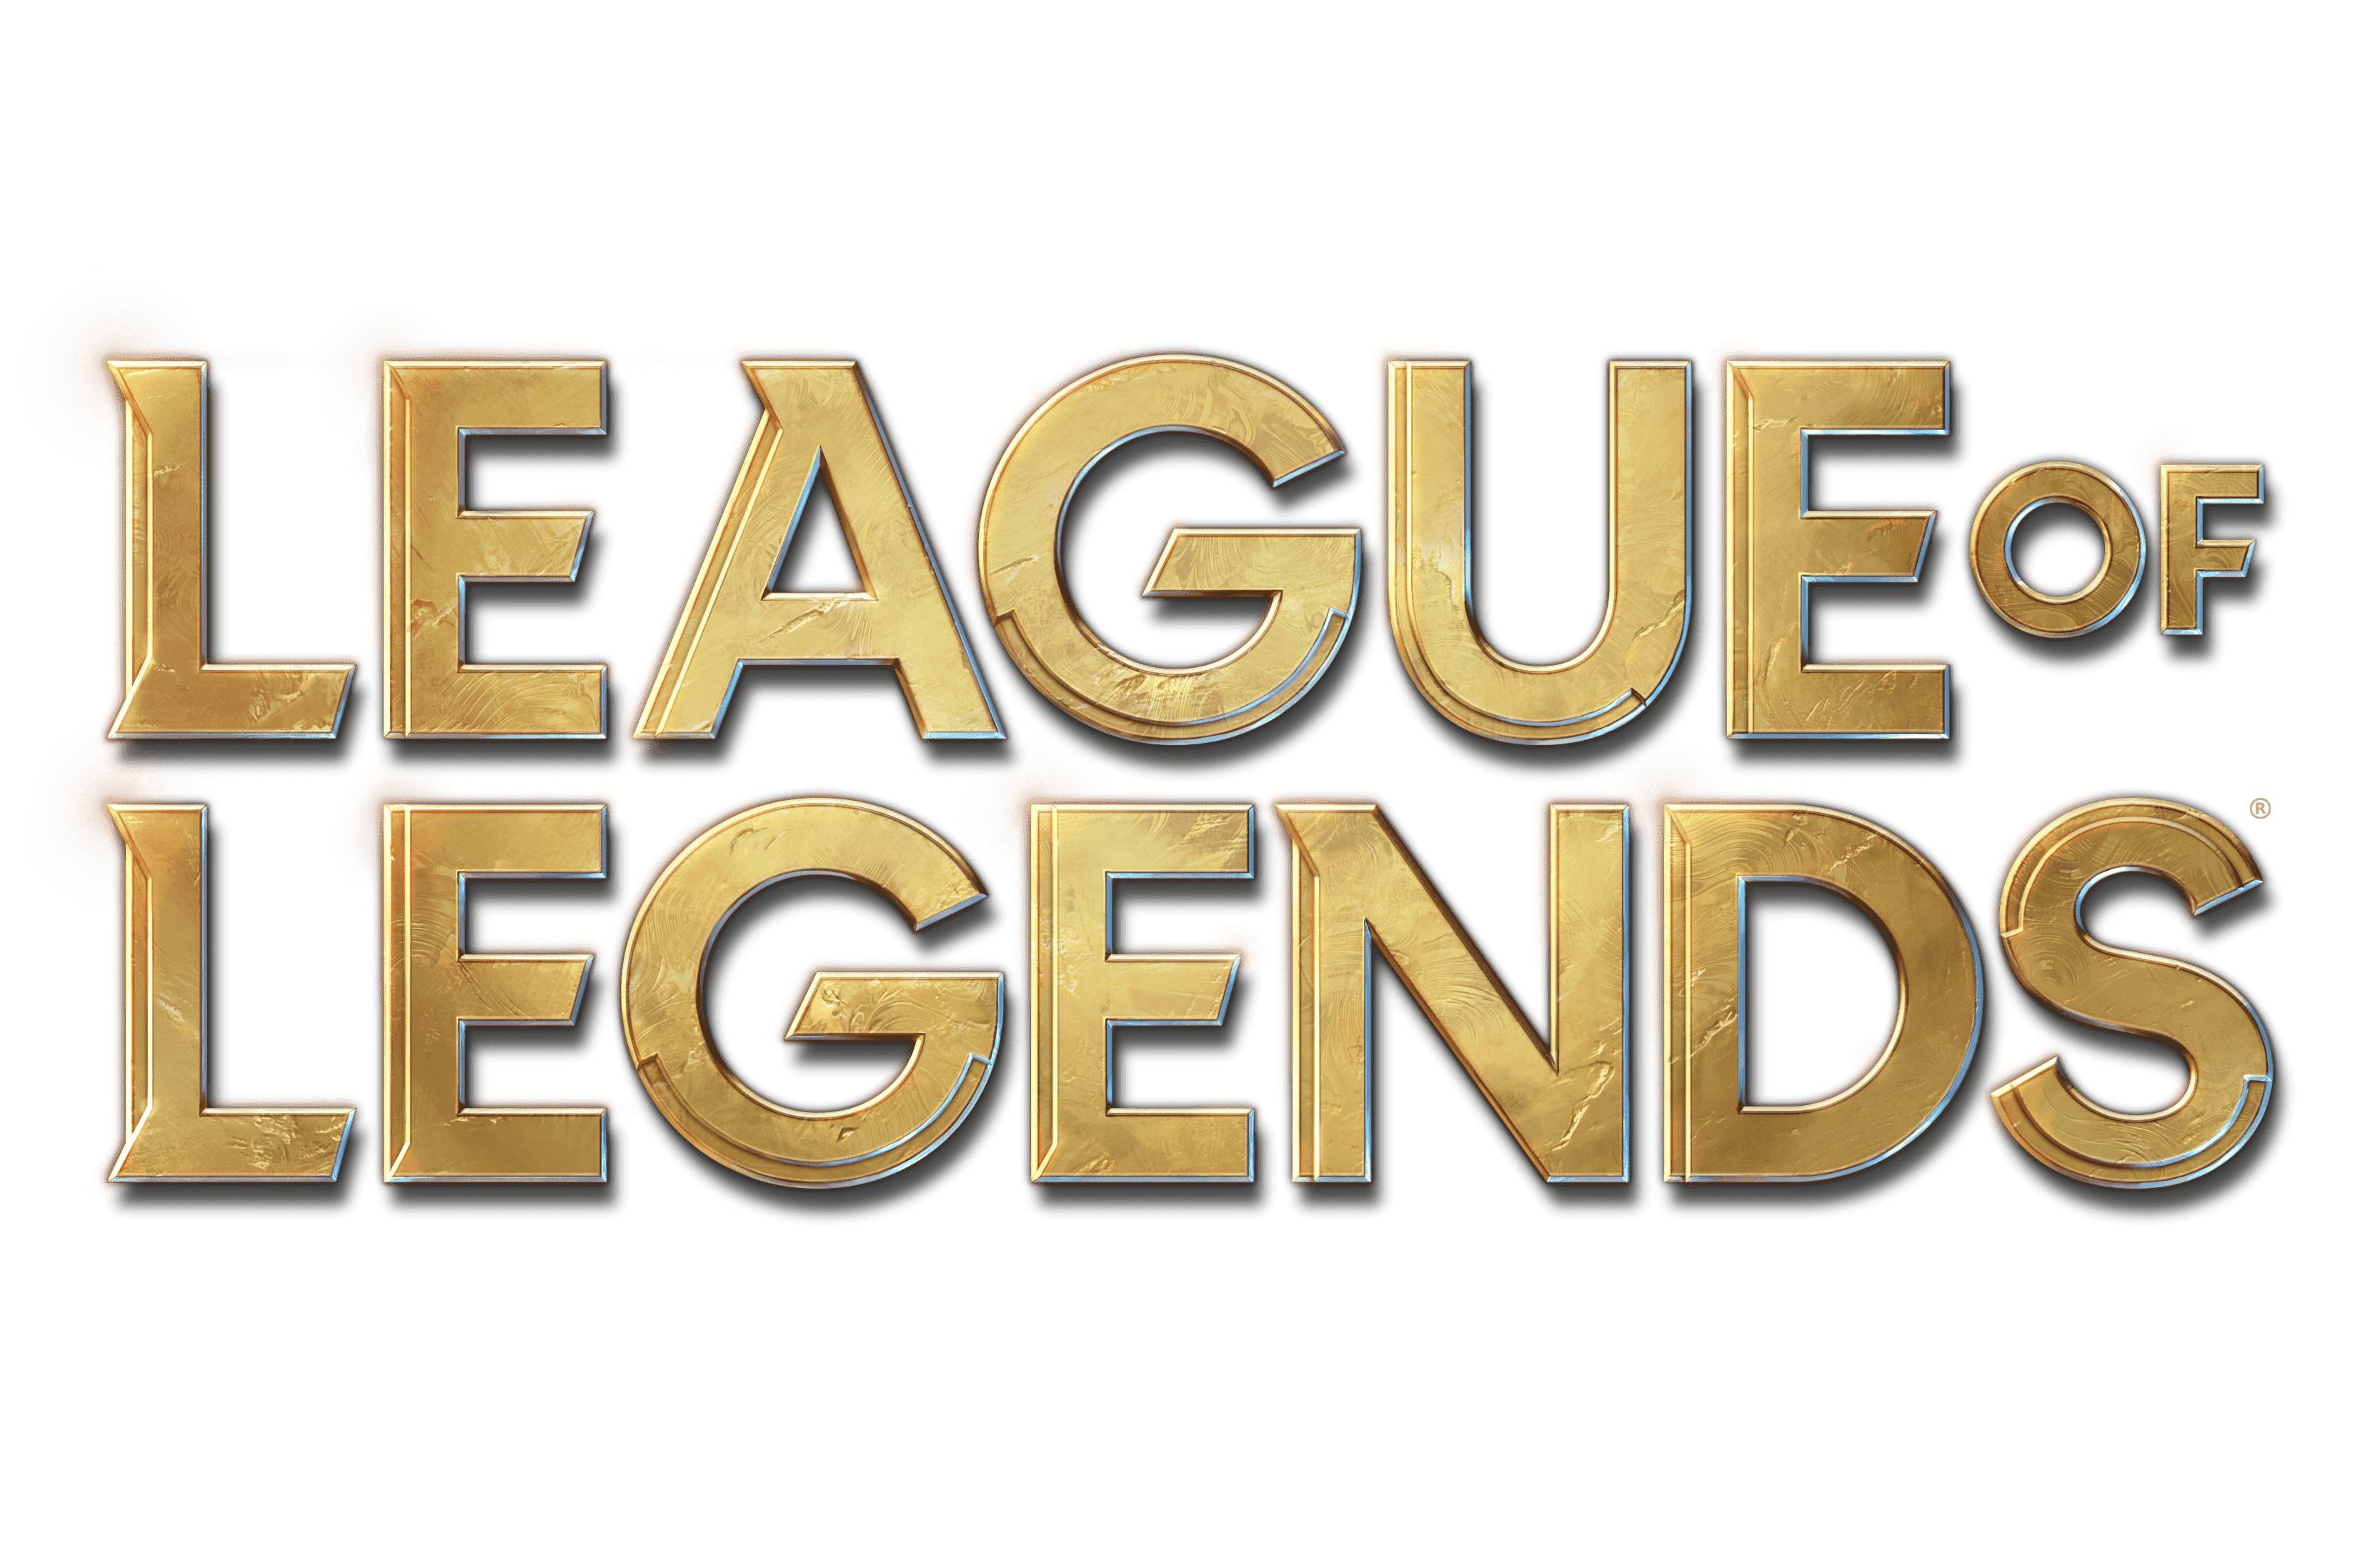 Logo League Of Legends